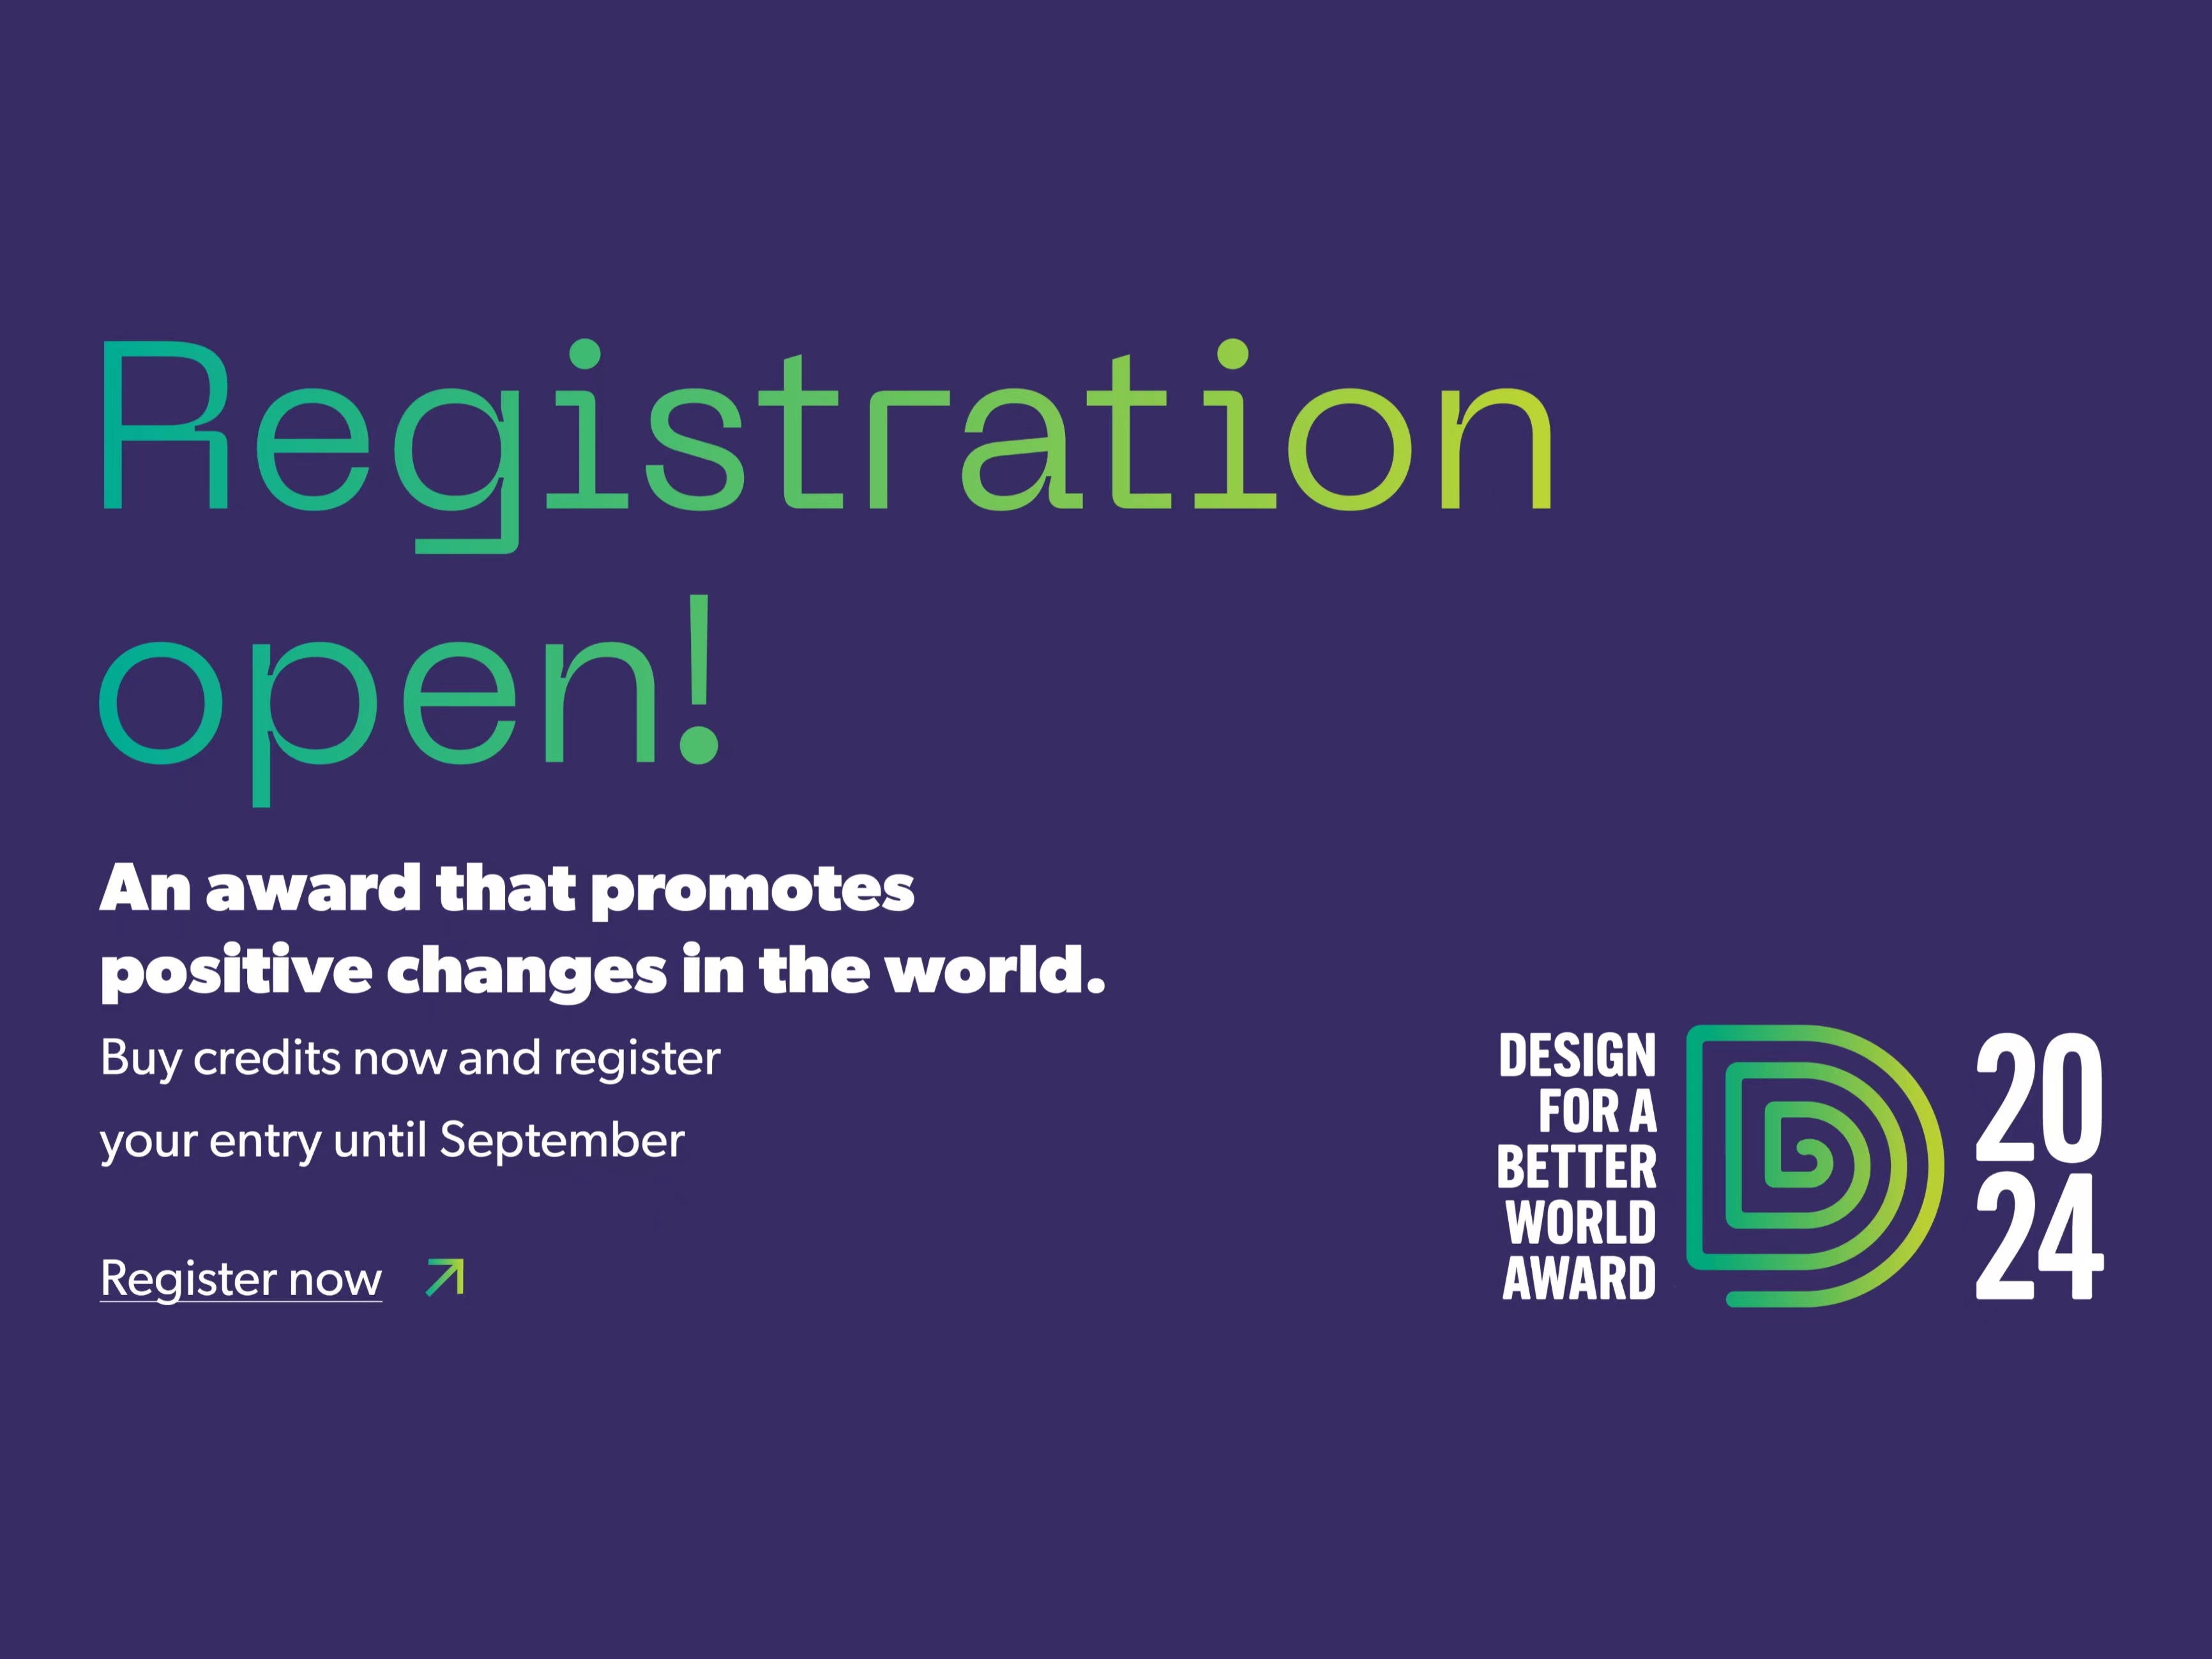 Registration Open for Design for a Better World Award